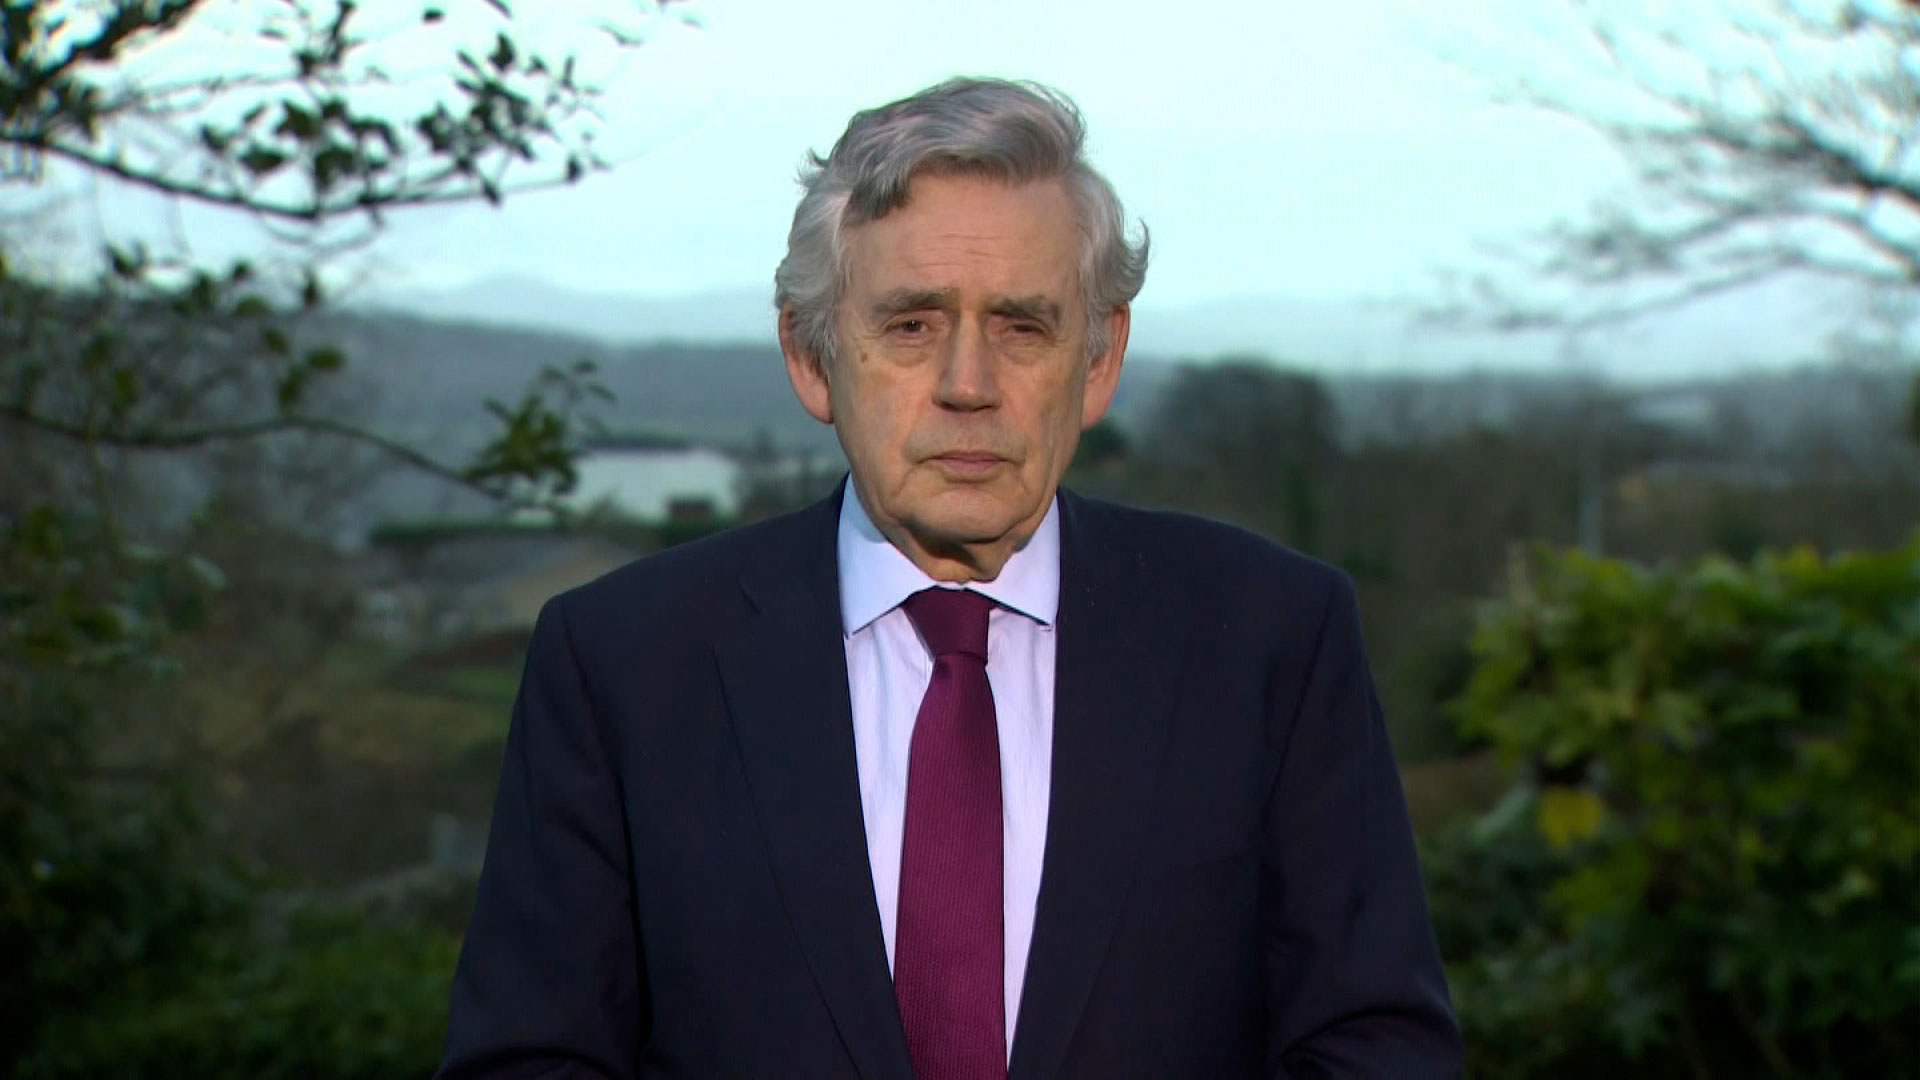 Former UK Prime Minister Gordon Brown speaks with CNN's Christiane Amanpour on Thursday.